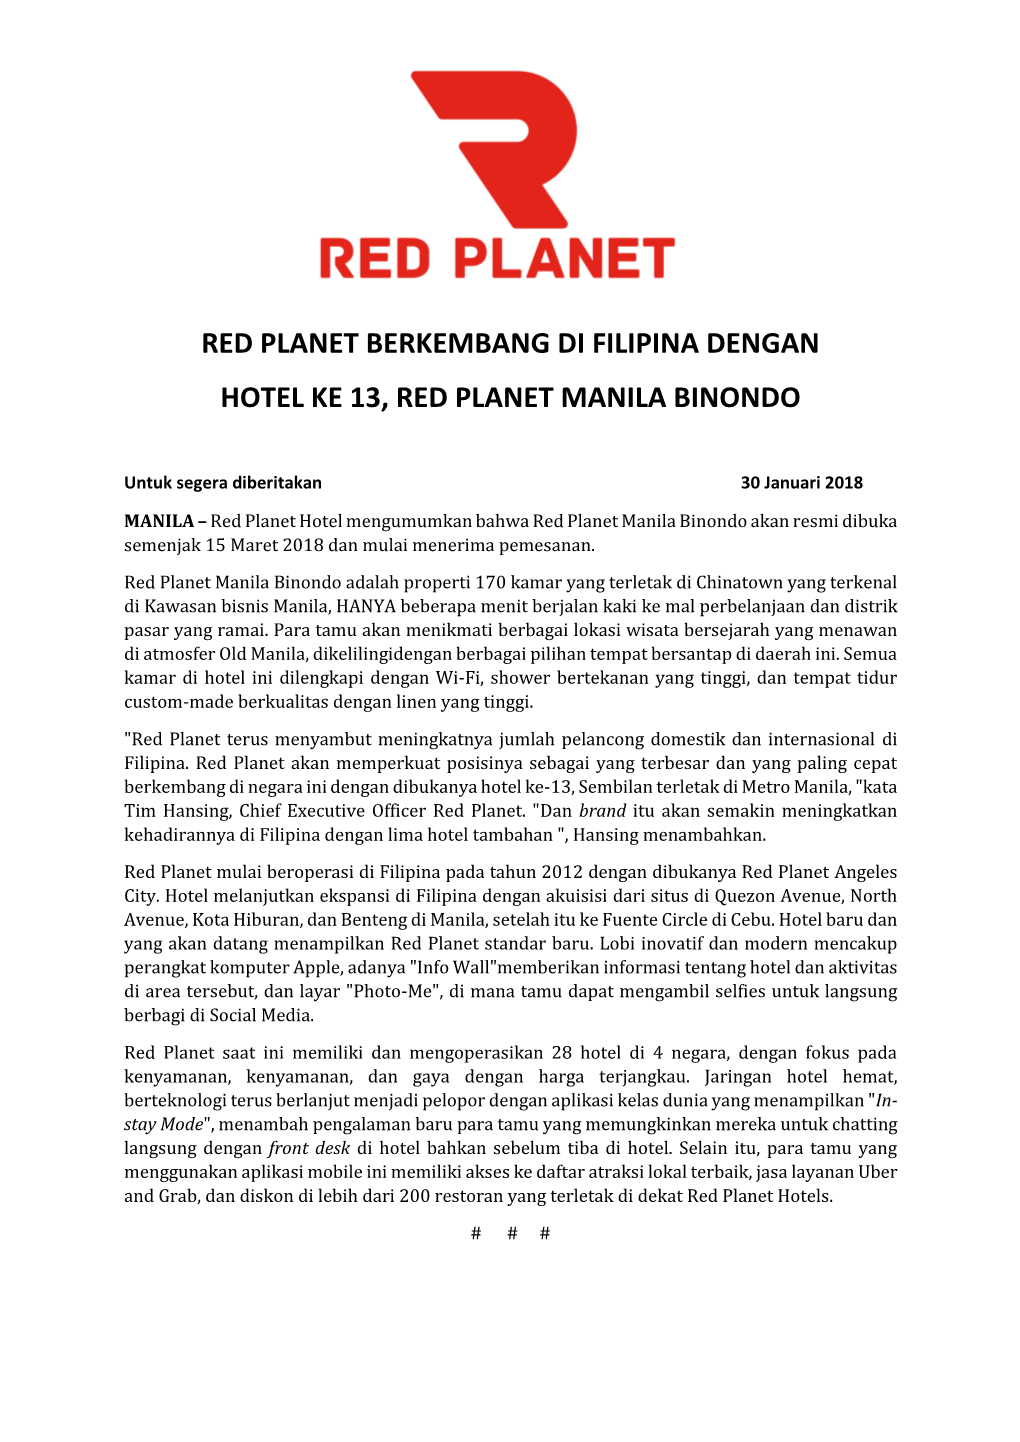 Red Planet Berkembang Di Filipina Dengan Hotel Ke 13, Red Planet Manila Binondo